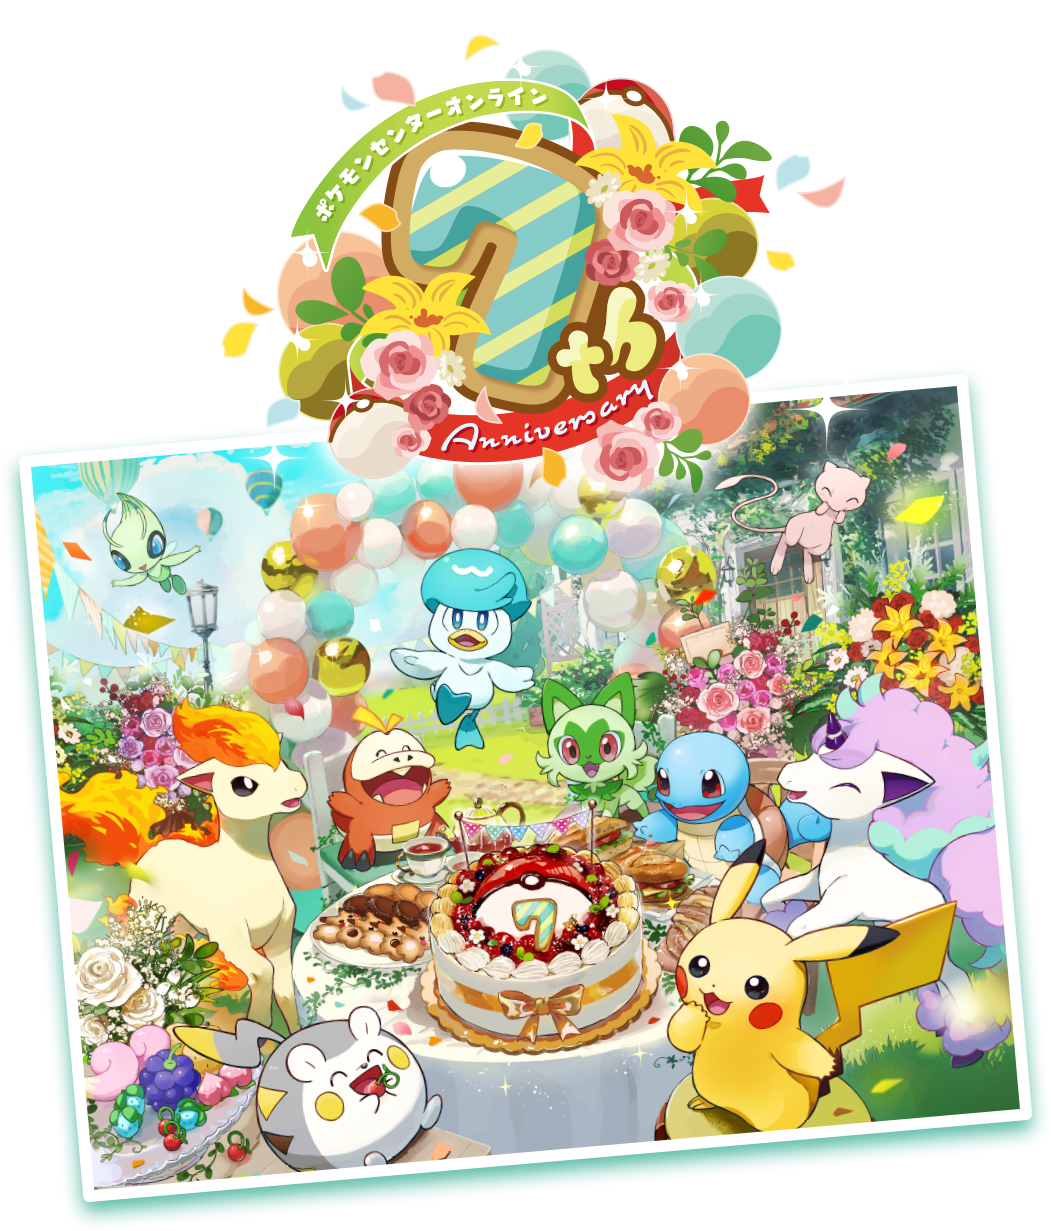 メール便送料無料05 【7th Anniversary】#pokémonpicnic キャンプ